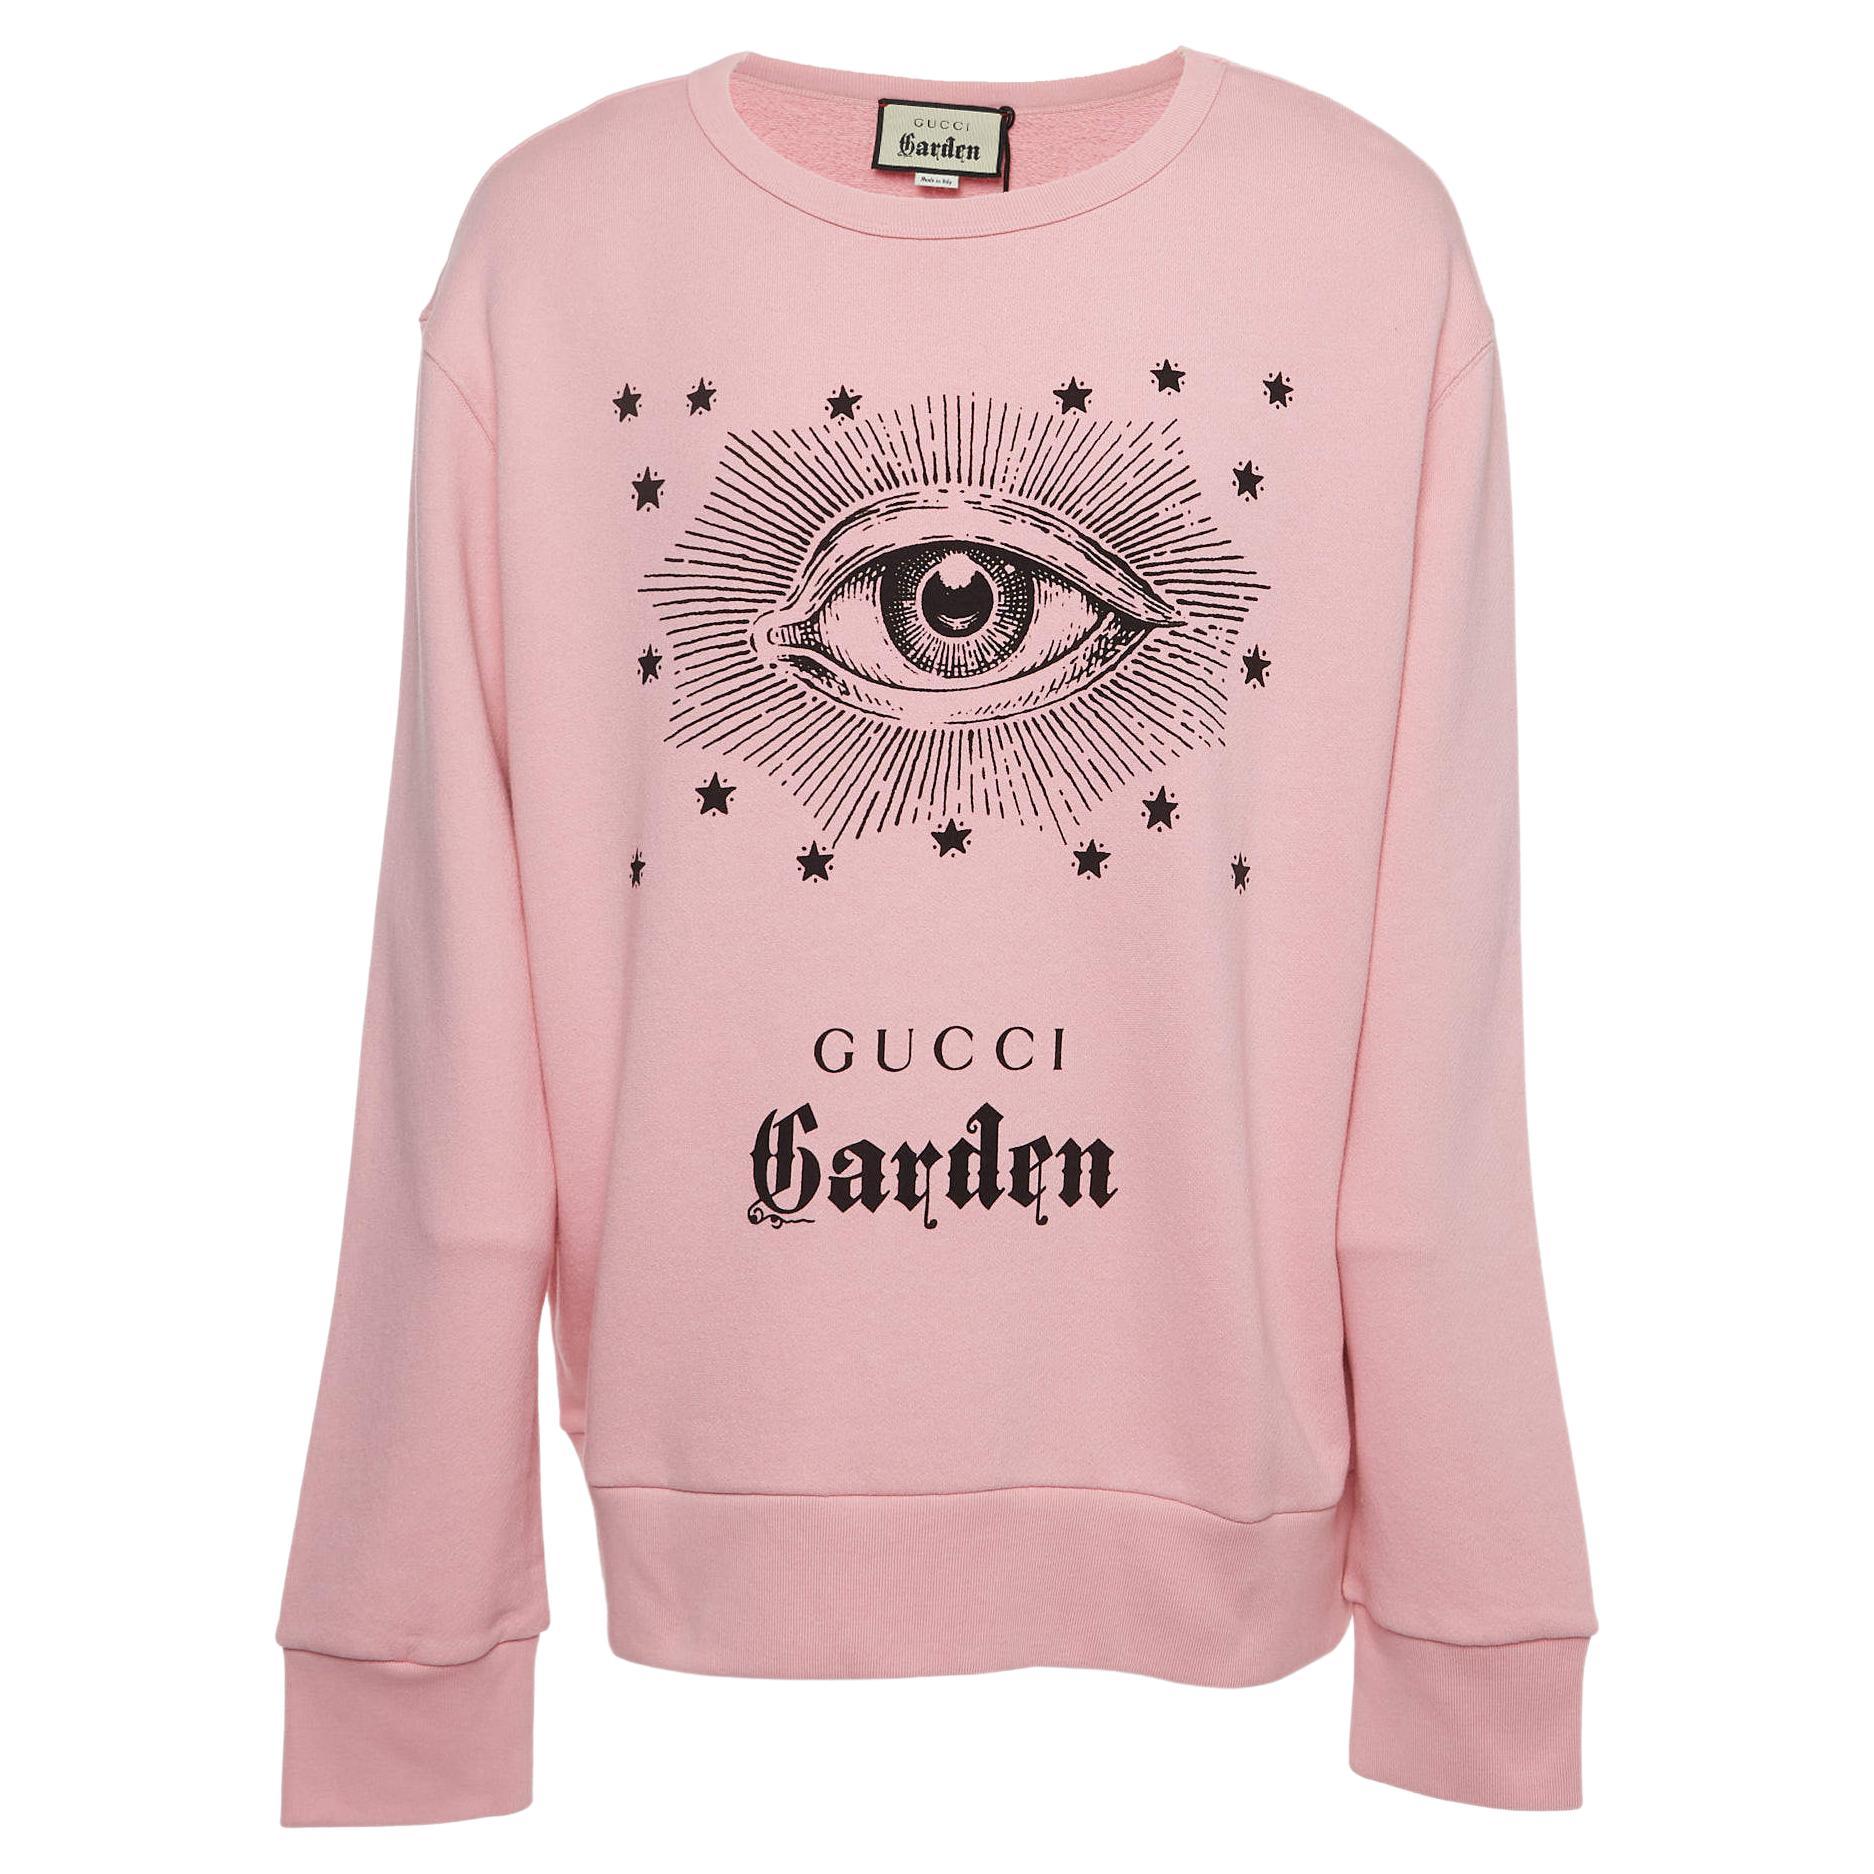 Gucci Garden Pink Eye Print Cotton Crew Neck Sweatshirt XL